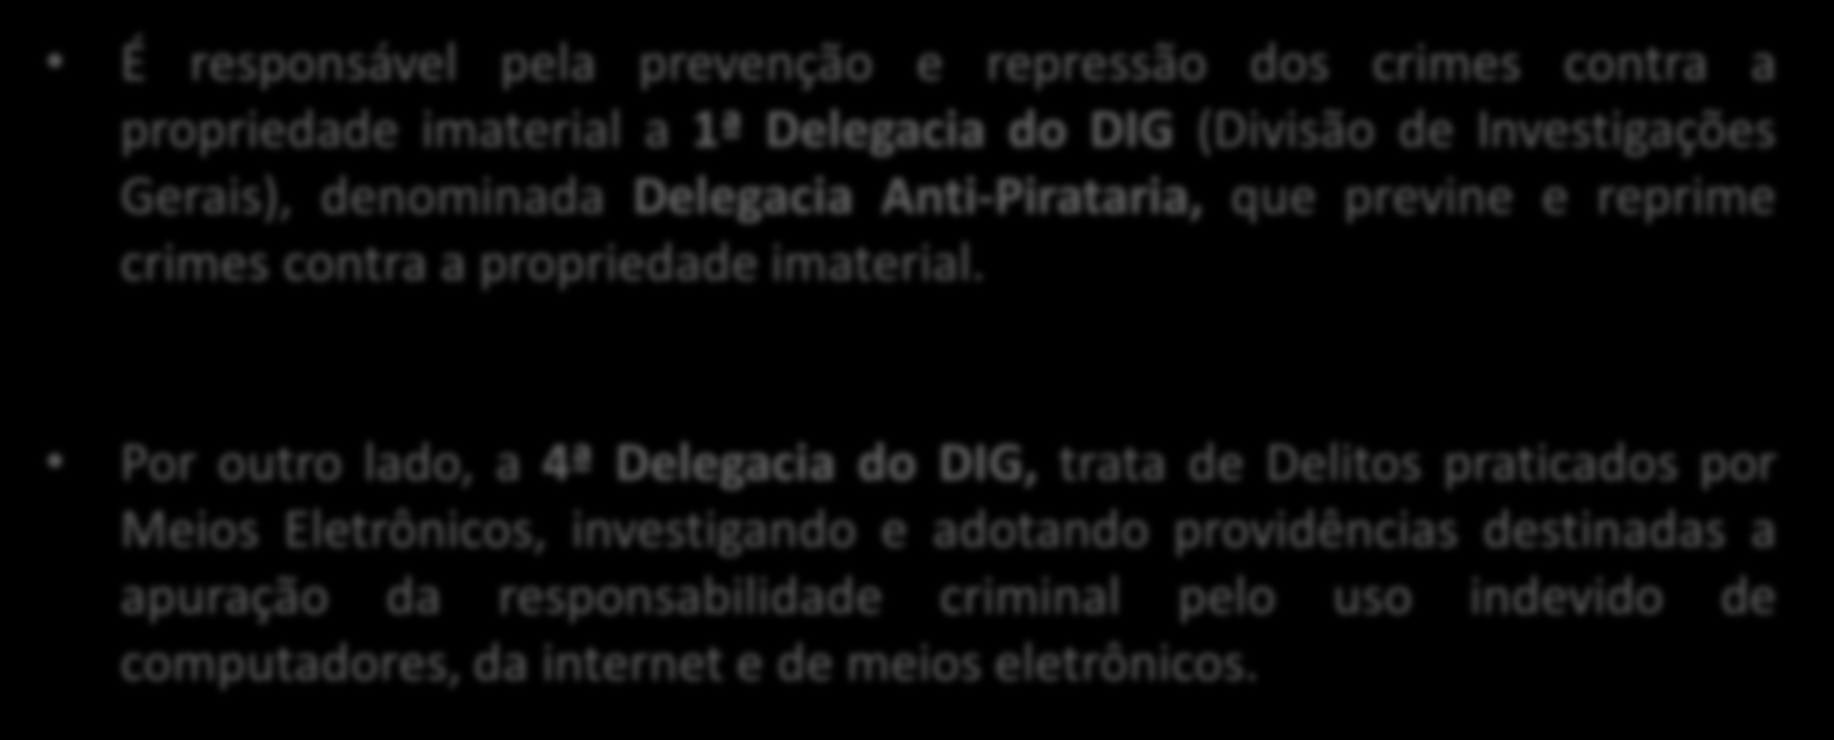 Autoridade Policial em São Paulo É responsável pela prevenção e repressão dos crimes contra a propriedade imaterial a 1ª Delegacia do DIG (Divisão de Investigações Gerais), denominada Delegacia